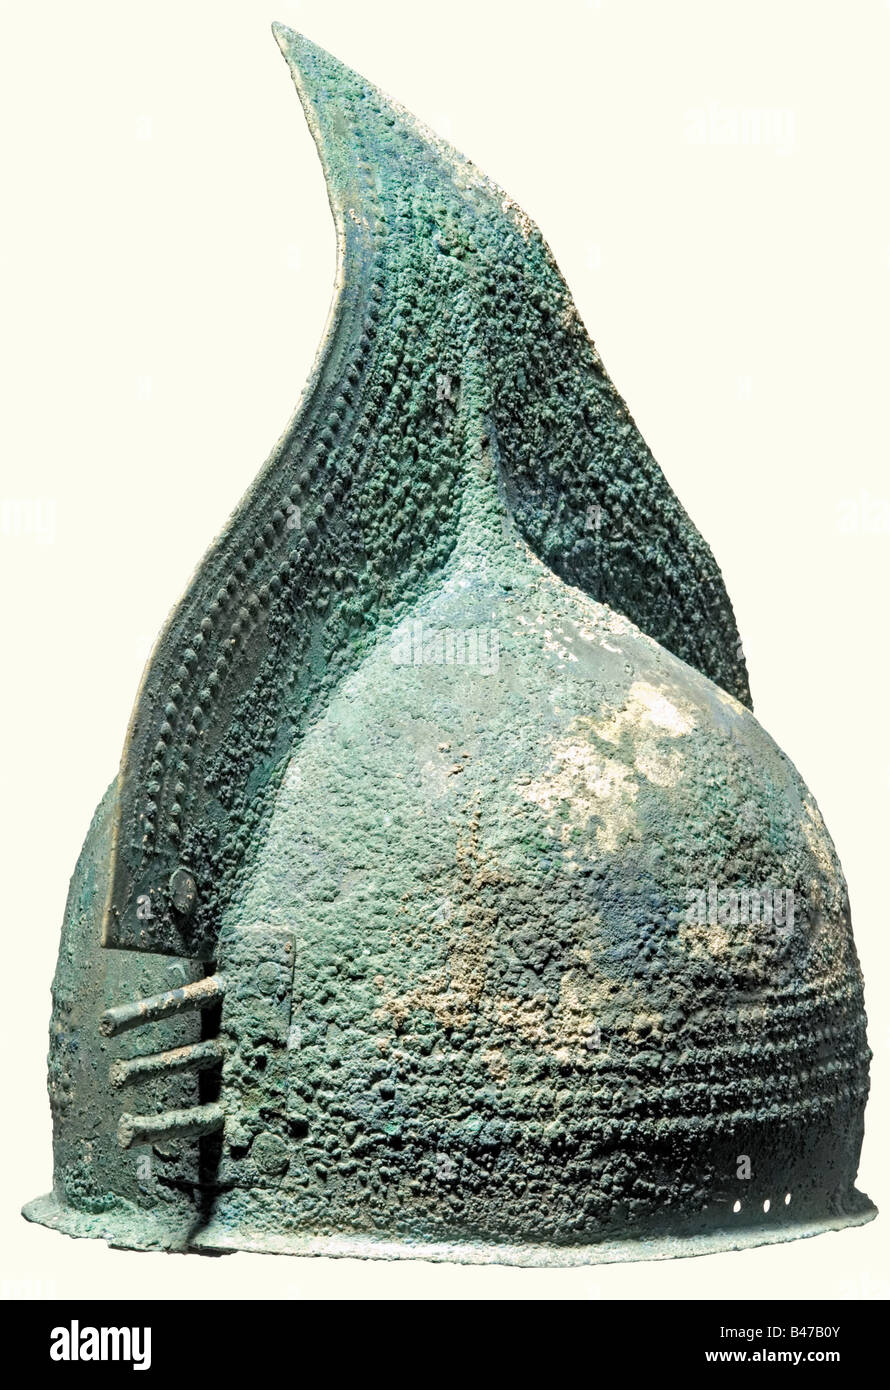 Ein bronzener Kammhelm, Frühe Eisenzeit, 9./8. Jahrhundert v. Chr. EIN bronzener Helm aus zwei Platten mit einem schmalen, abstehenden unteren Rand. Der Punkt des großen, dreieckigen Kamms ist leicht gebogen. Beide Helmhälften werden durch Drehen unter den Kanten oder Nieten zusammengefügt. Die Vorder- und Rückseite des Helms überlappen sich und sind mit schweren Bronzeplatten genietet, die jeweils mit einem Kreis und mit je drei hervorstehenden, stabförmigen Stacheln verziert sind. Helmkörper und Kamm sind mit großen und kleinen Knöpfen verziert. Auf jeder Seite befinden sich drei Löcher für die Befestigung des Kinnblechs. Greeni, Stockfoto